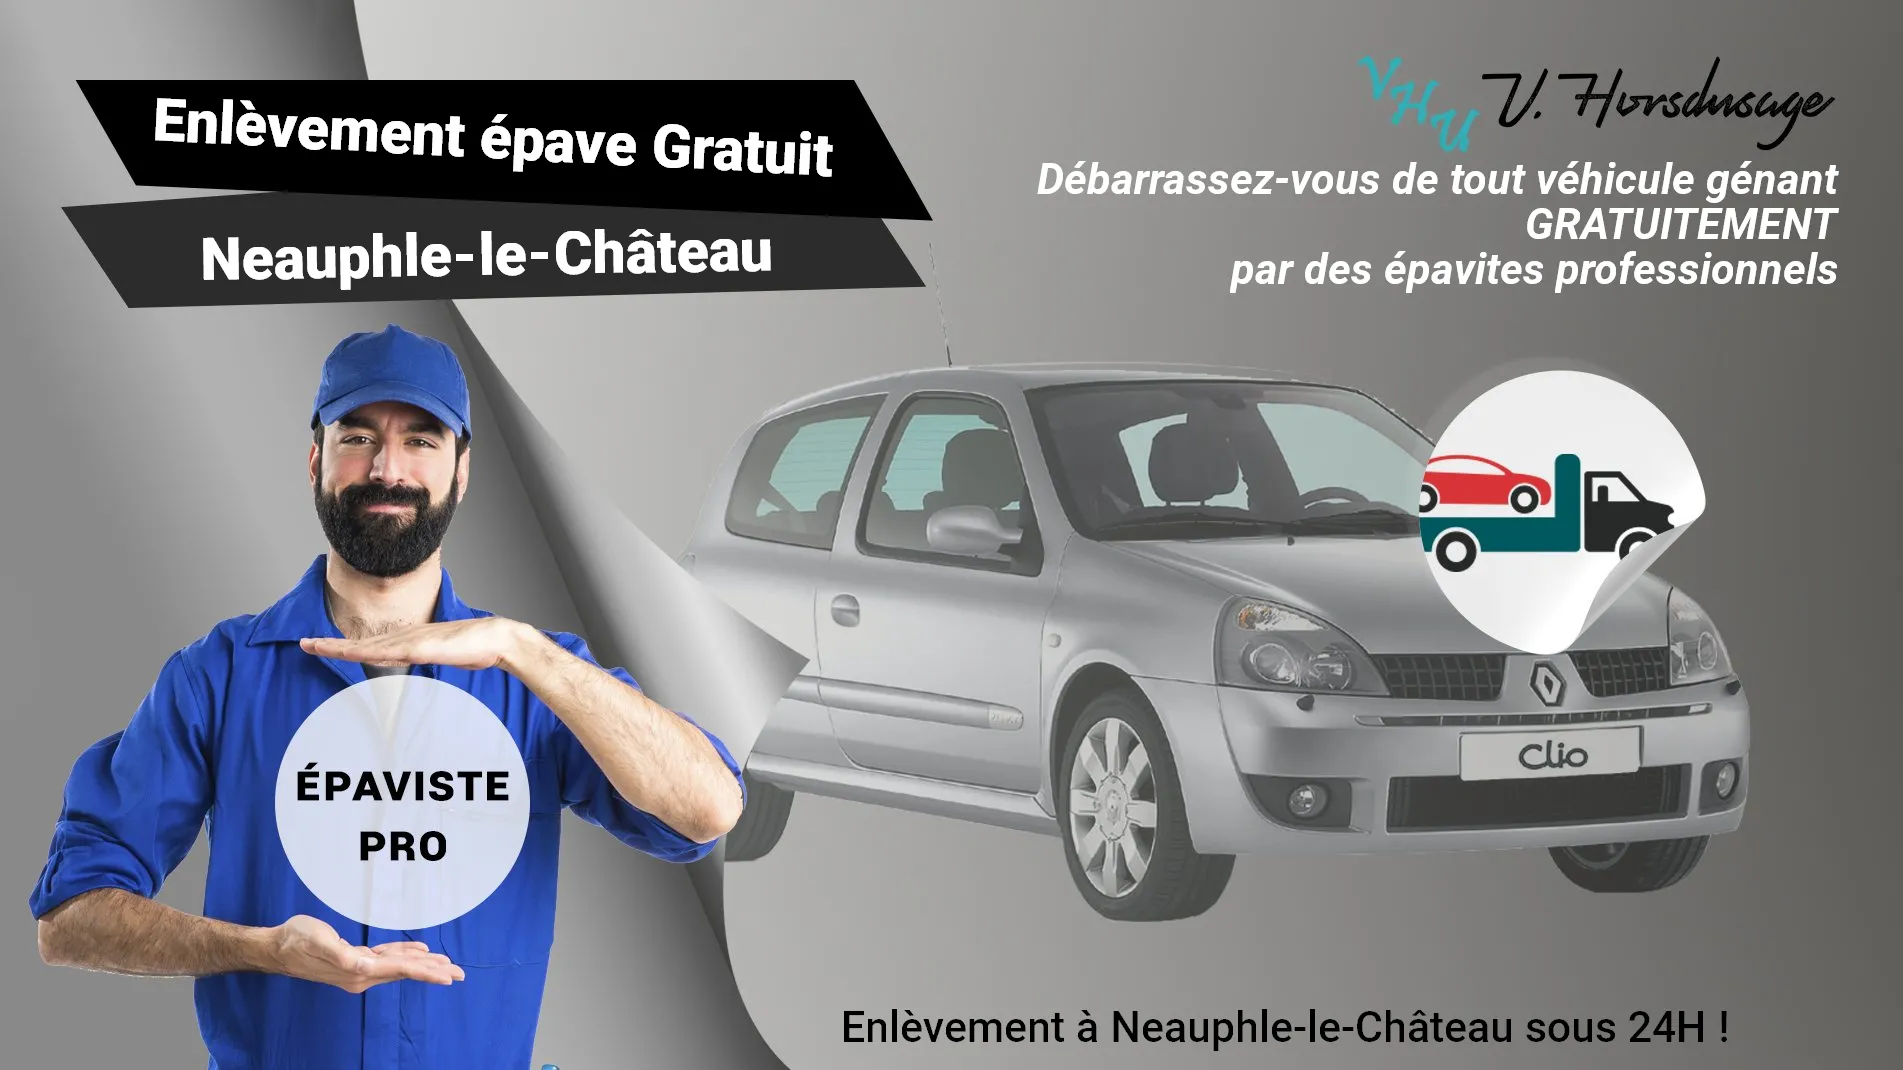 Pour un enlèvement gratuit à Neauphle-le-Château, contactez nos épavistes agréé VHU